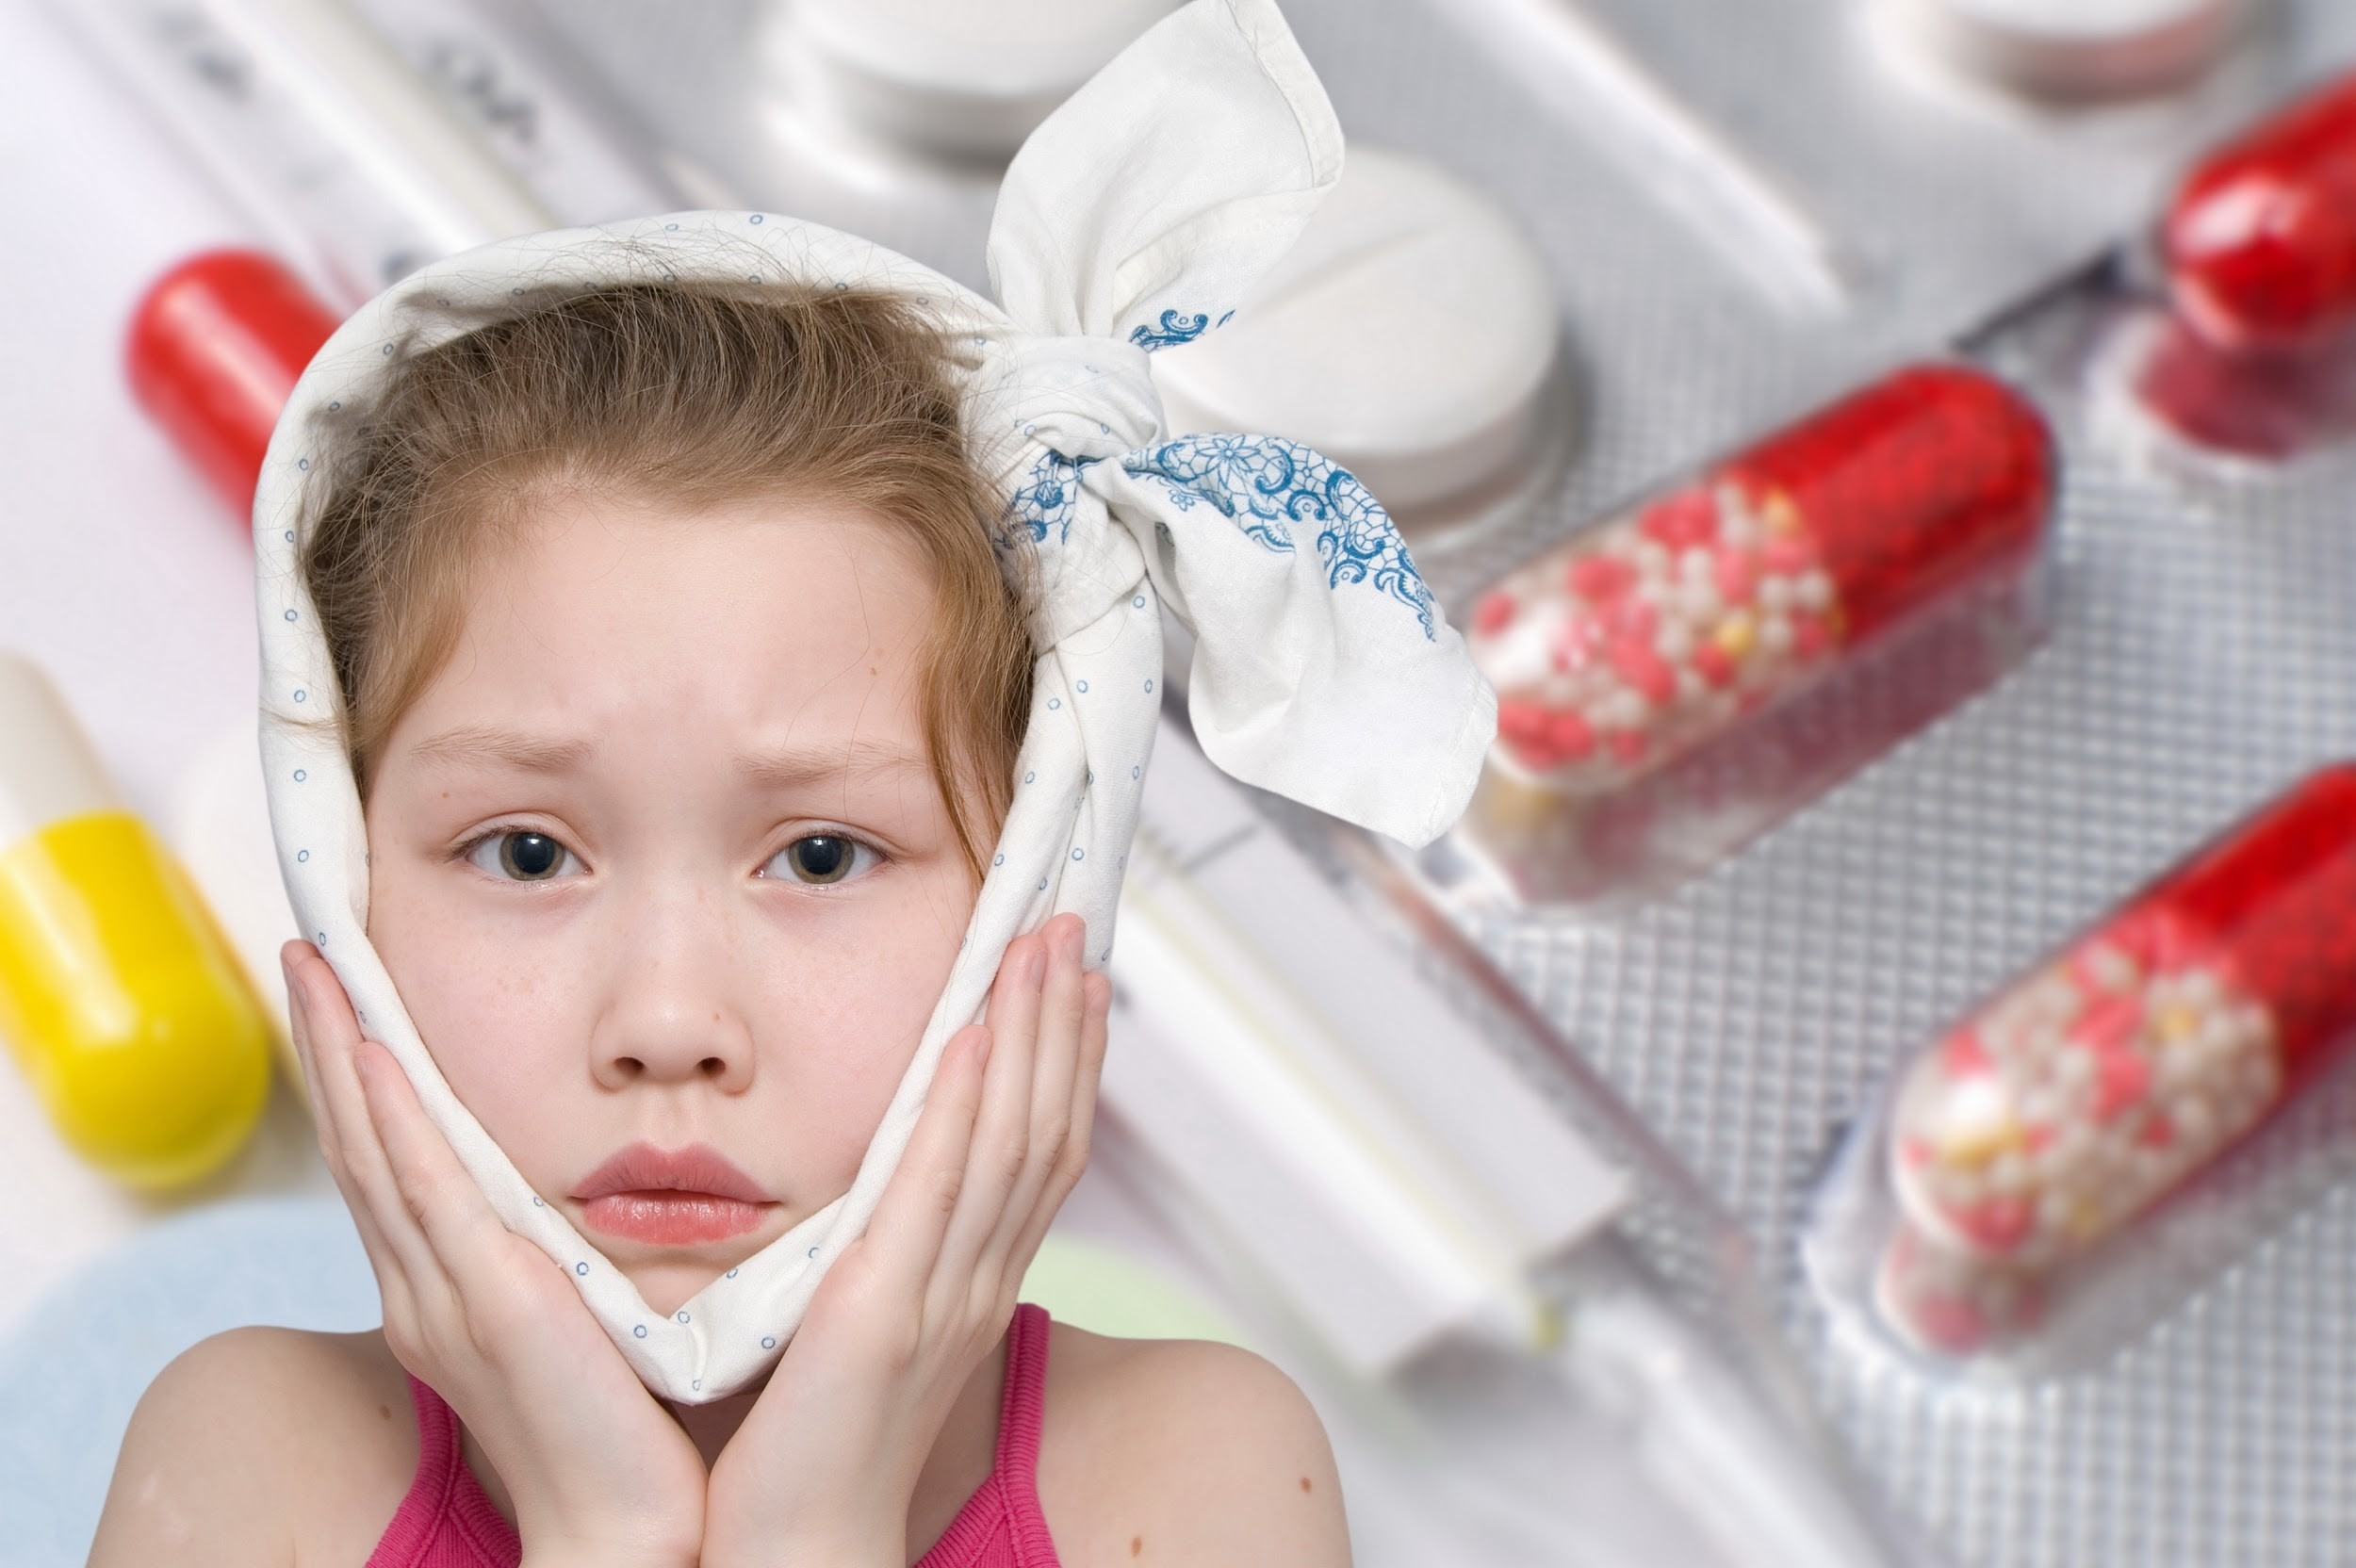 Tại sao trẻ em cần tránh hoạt động mạnh khi bị bệnh quai bị?
